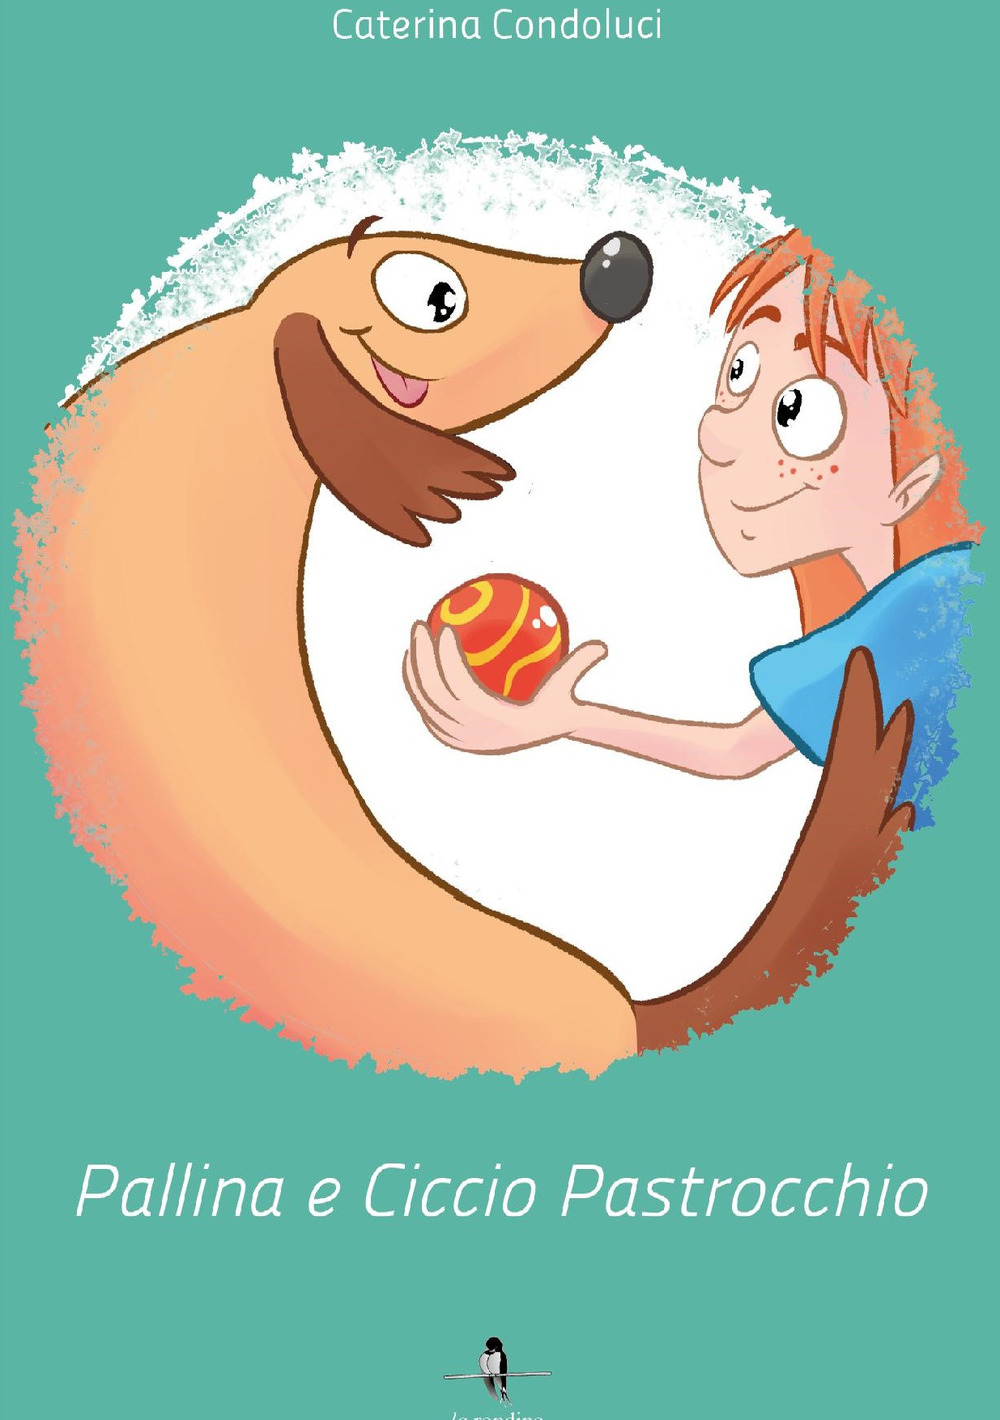 Pallina e Ciccio Pastrocchio